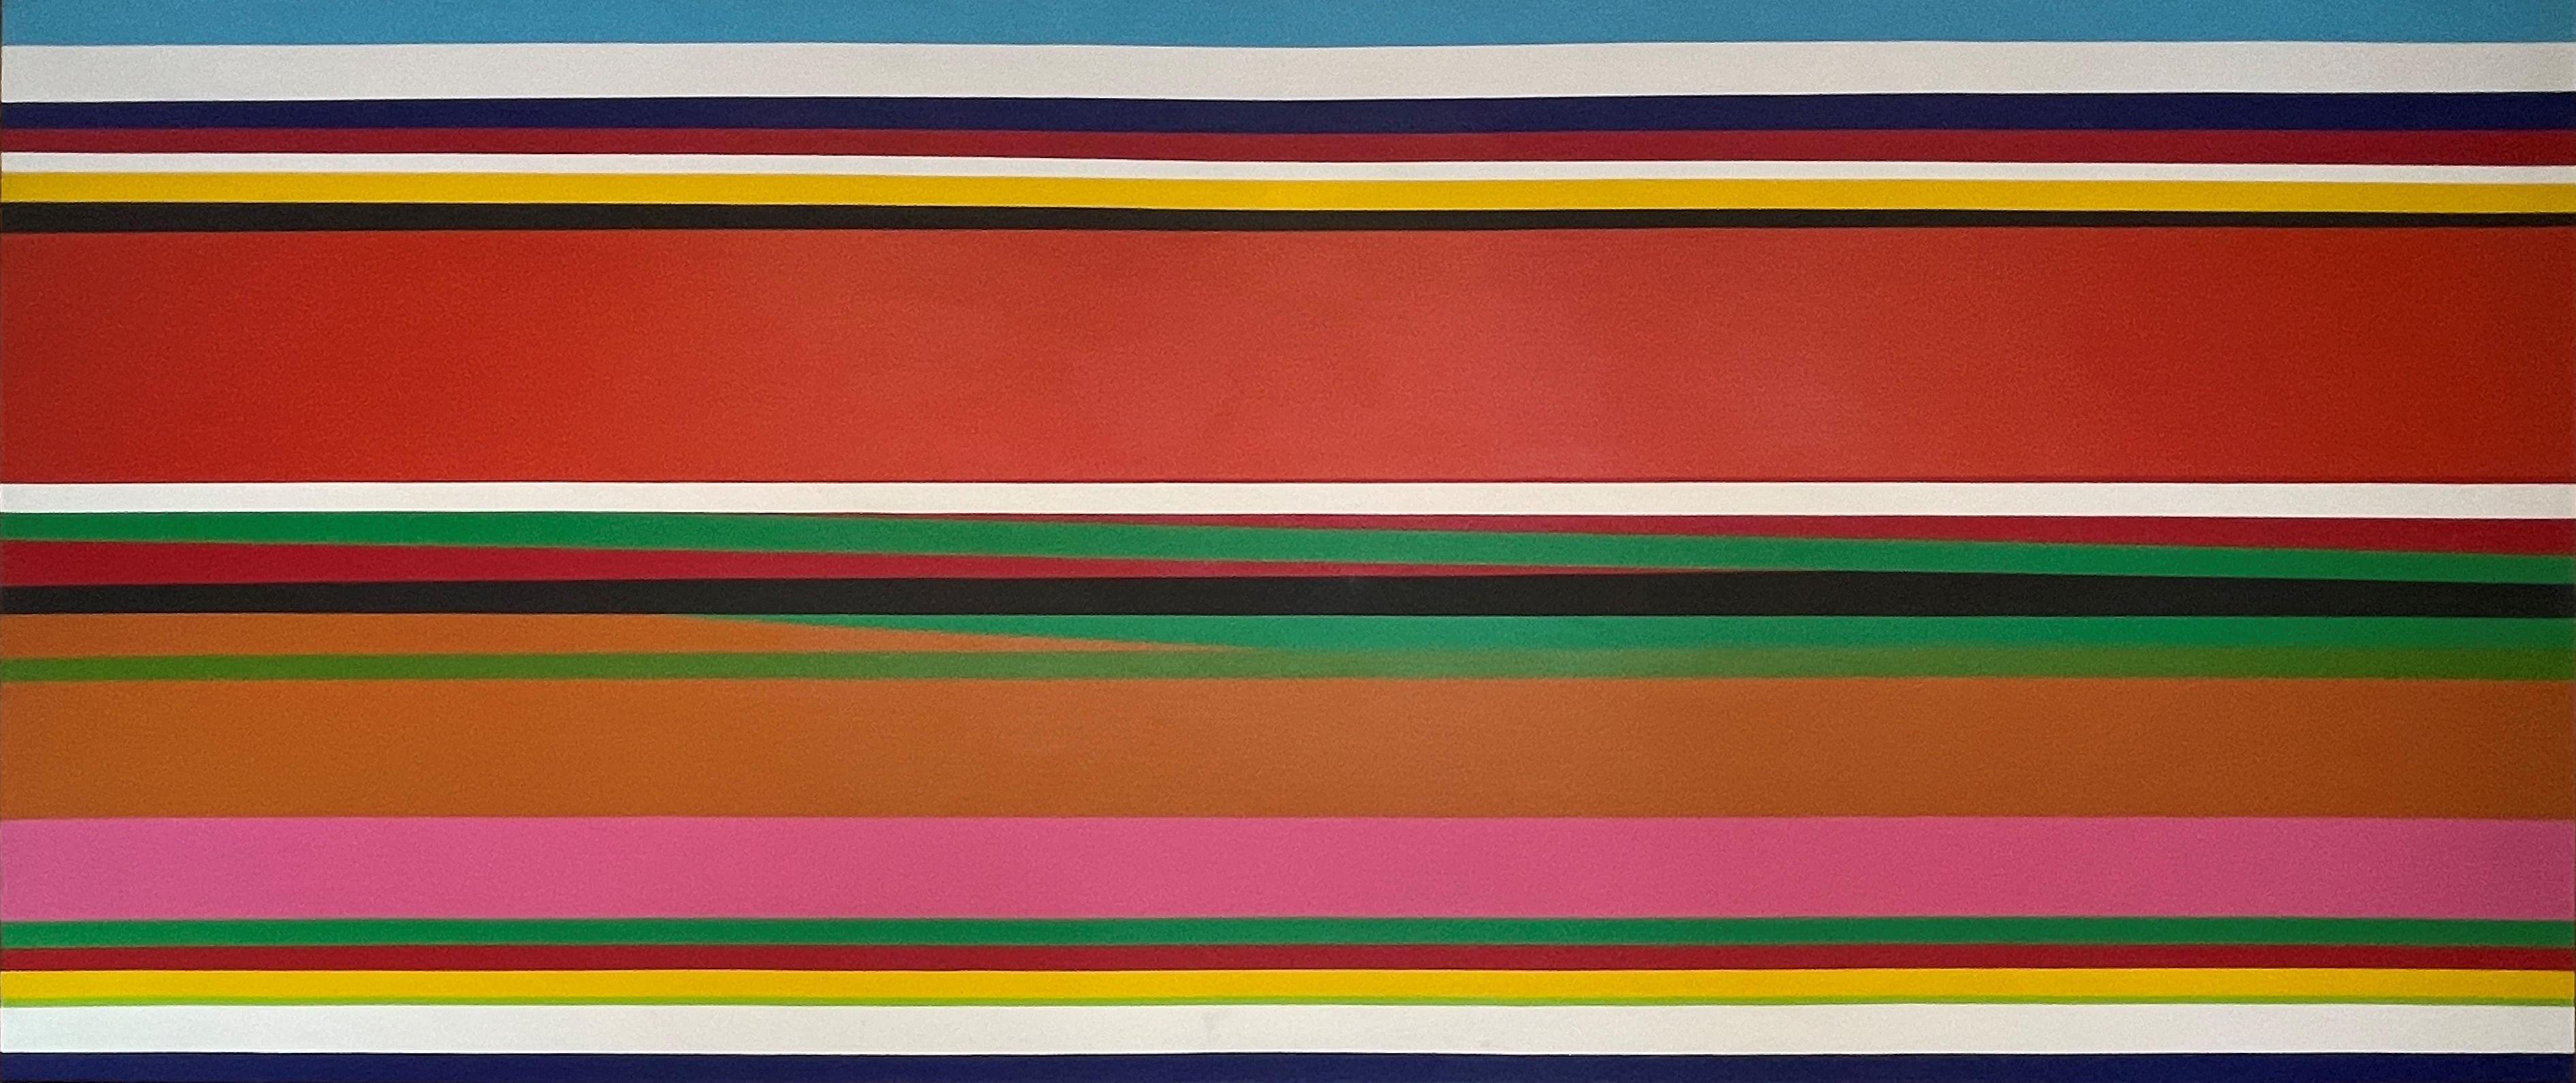 « Sans titre », Jay Rosenblum, champ de couleurs à bords durs, rayures horizontales colorées